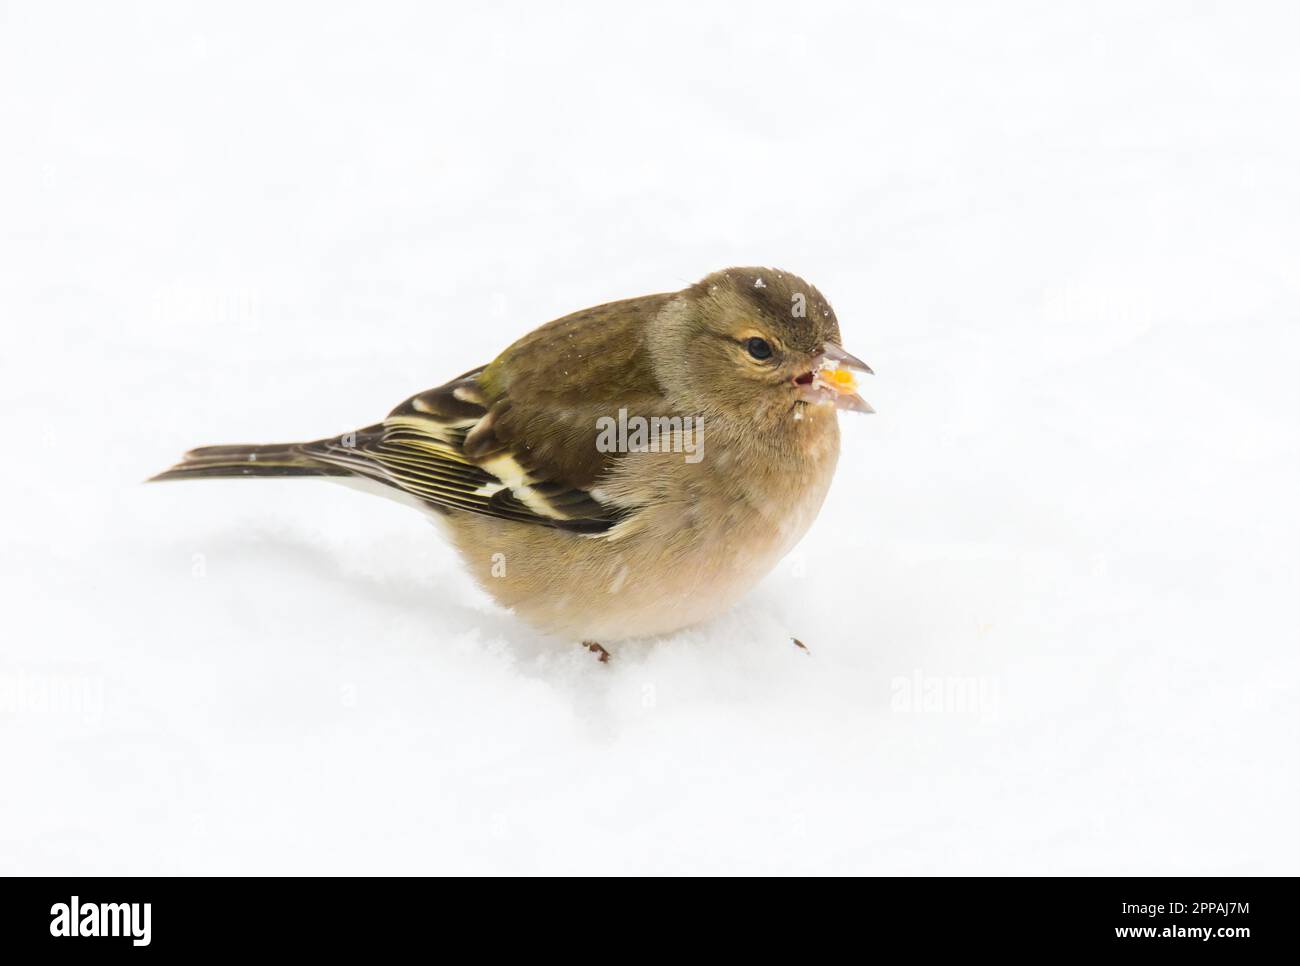 Chaffinch bird femme debout dans la neige Banque D'Images